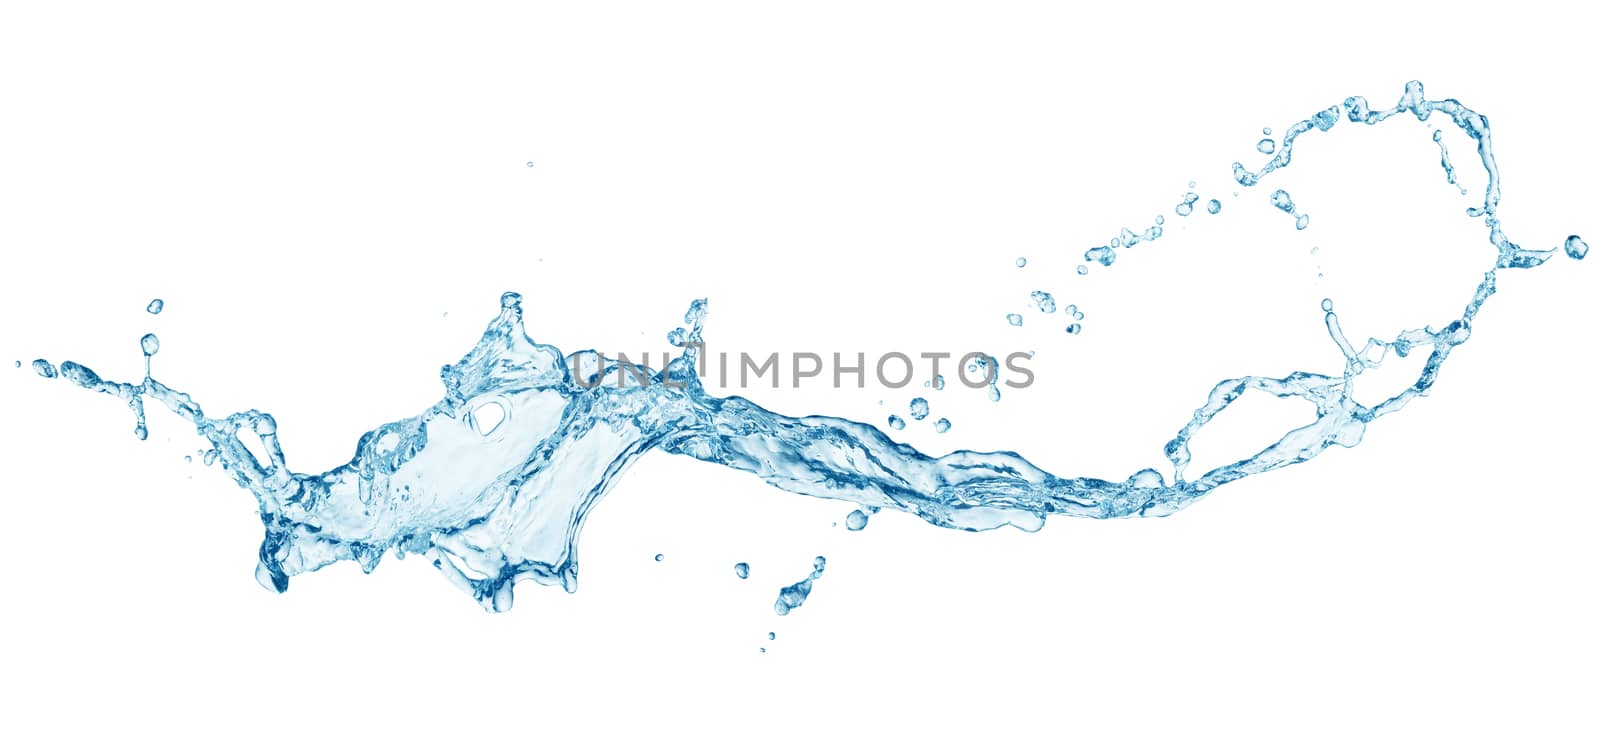 Water splashing isolated on white background